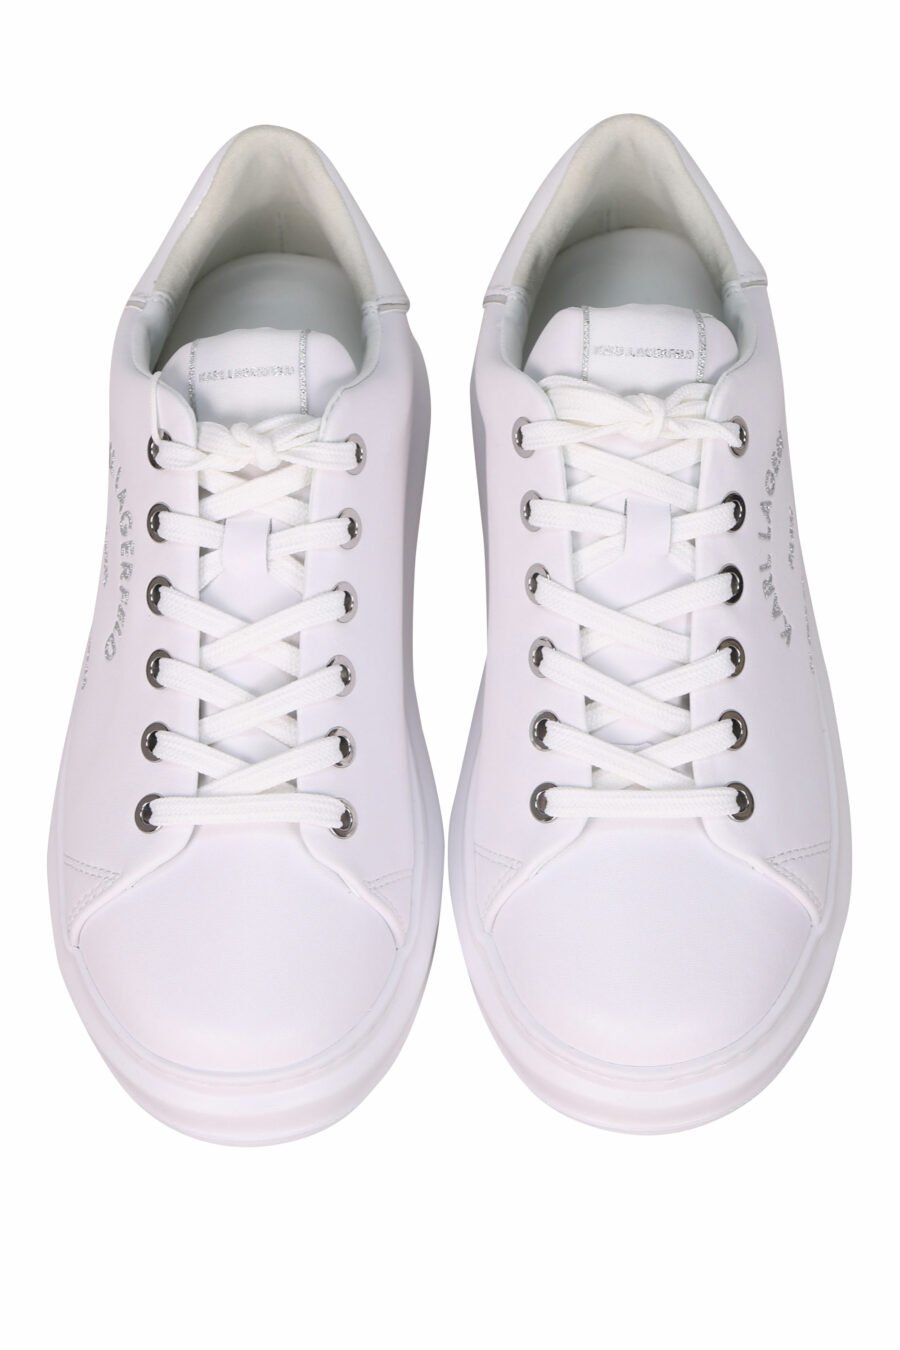 Zapatillas blancas "kapri" con detalle purpurina - 5059529351570 4